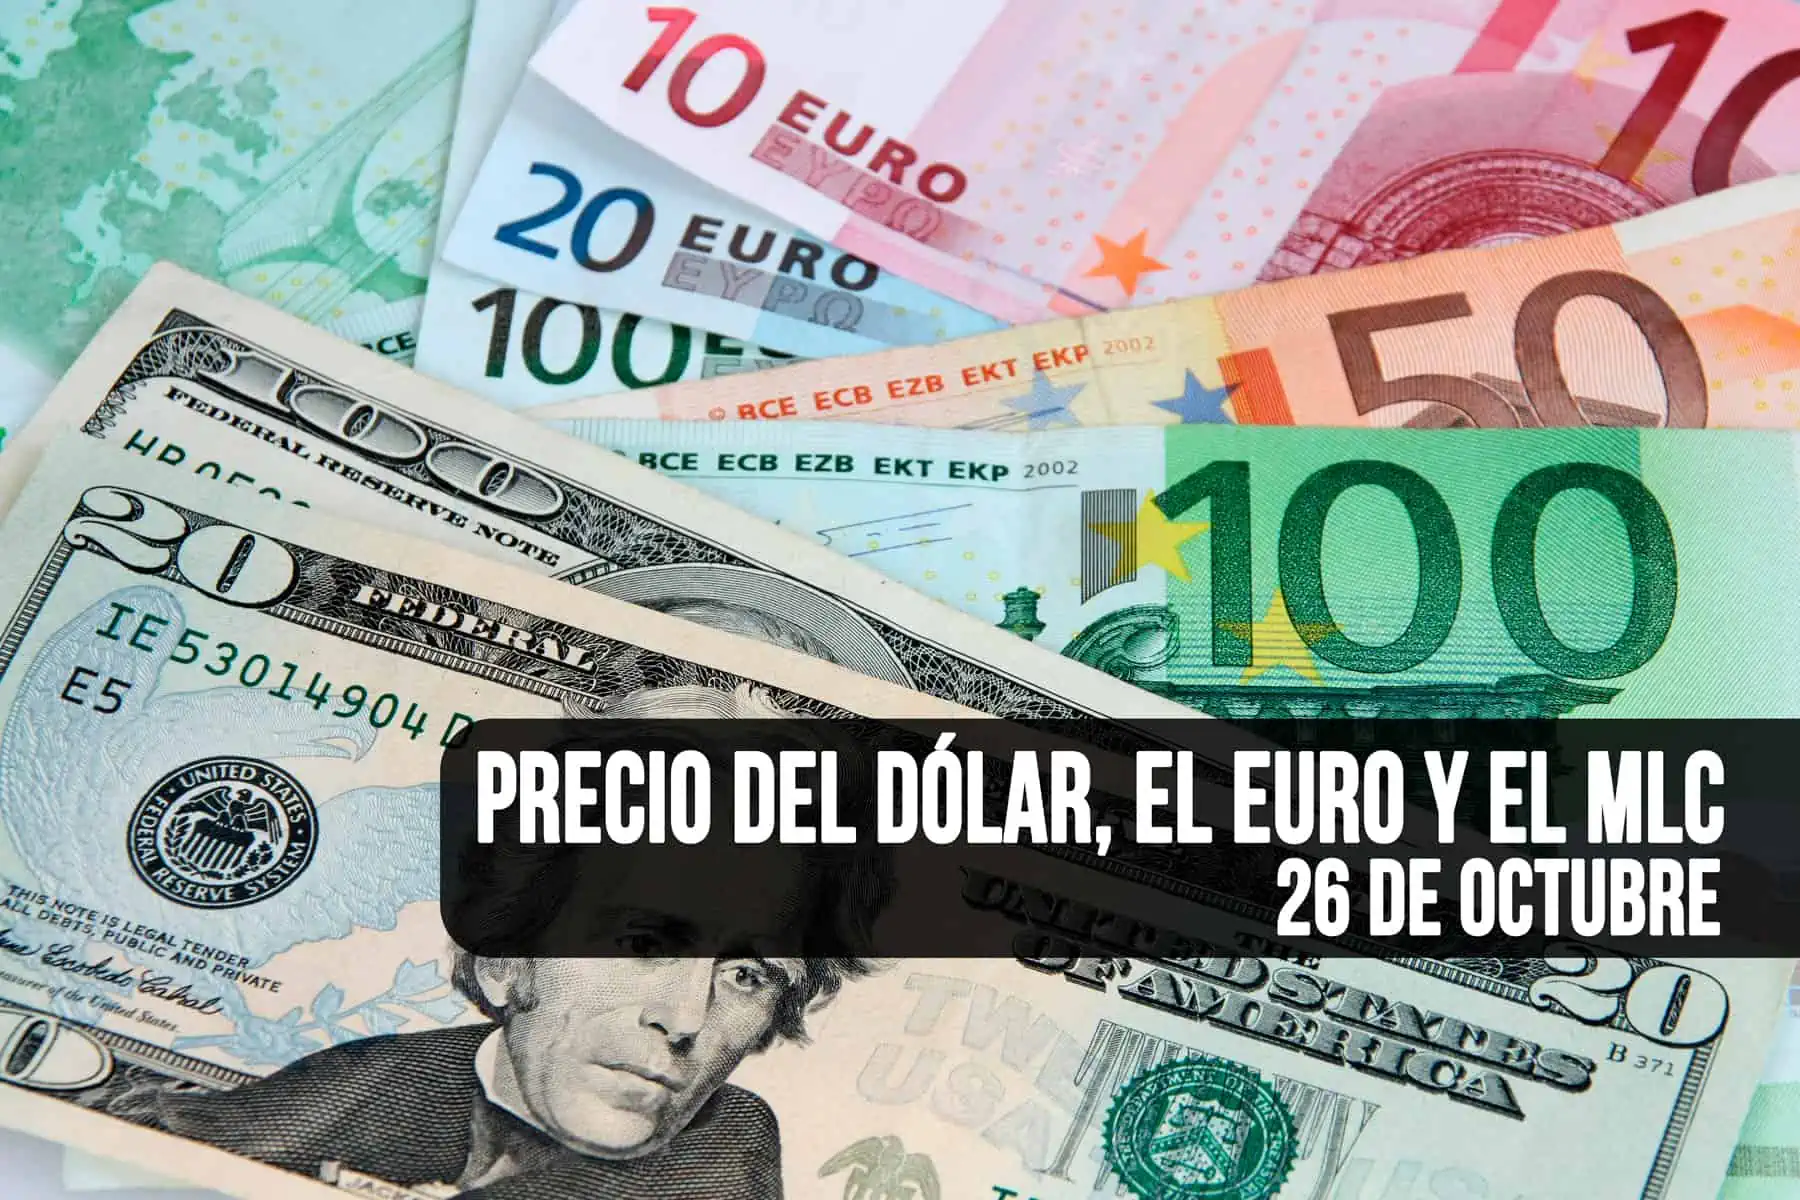 Estos son los Precios del Dólar, el Euro y el MLC en Cuba HOY 26 de Octubre